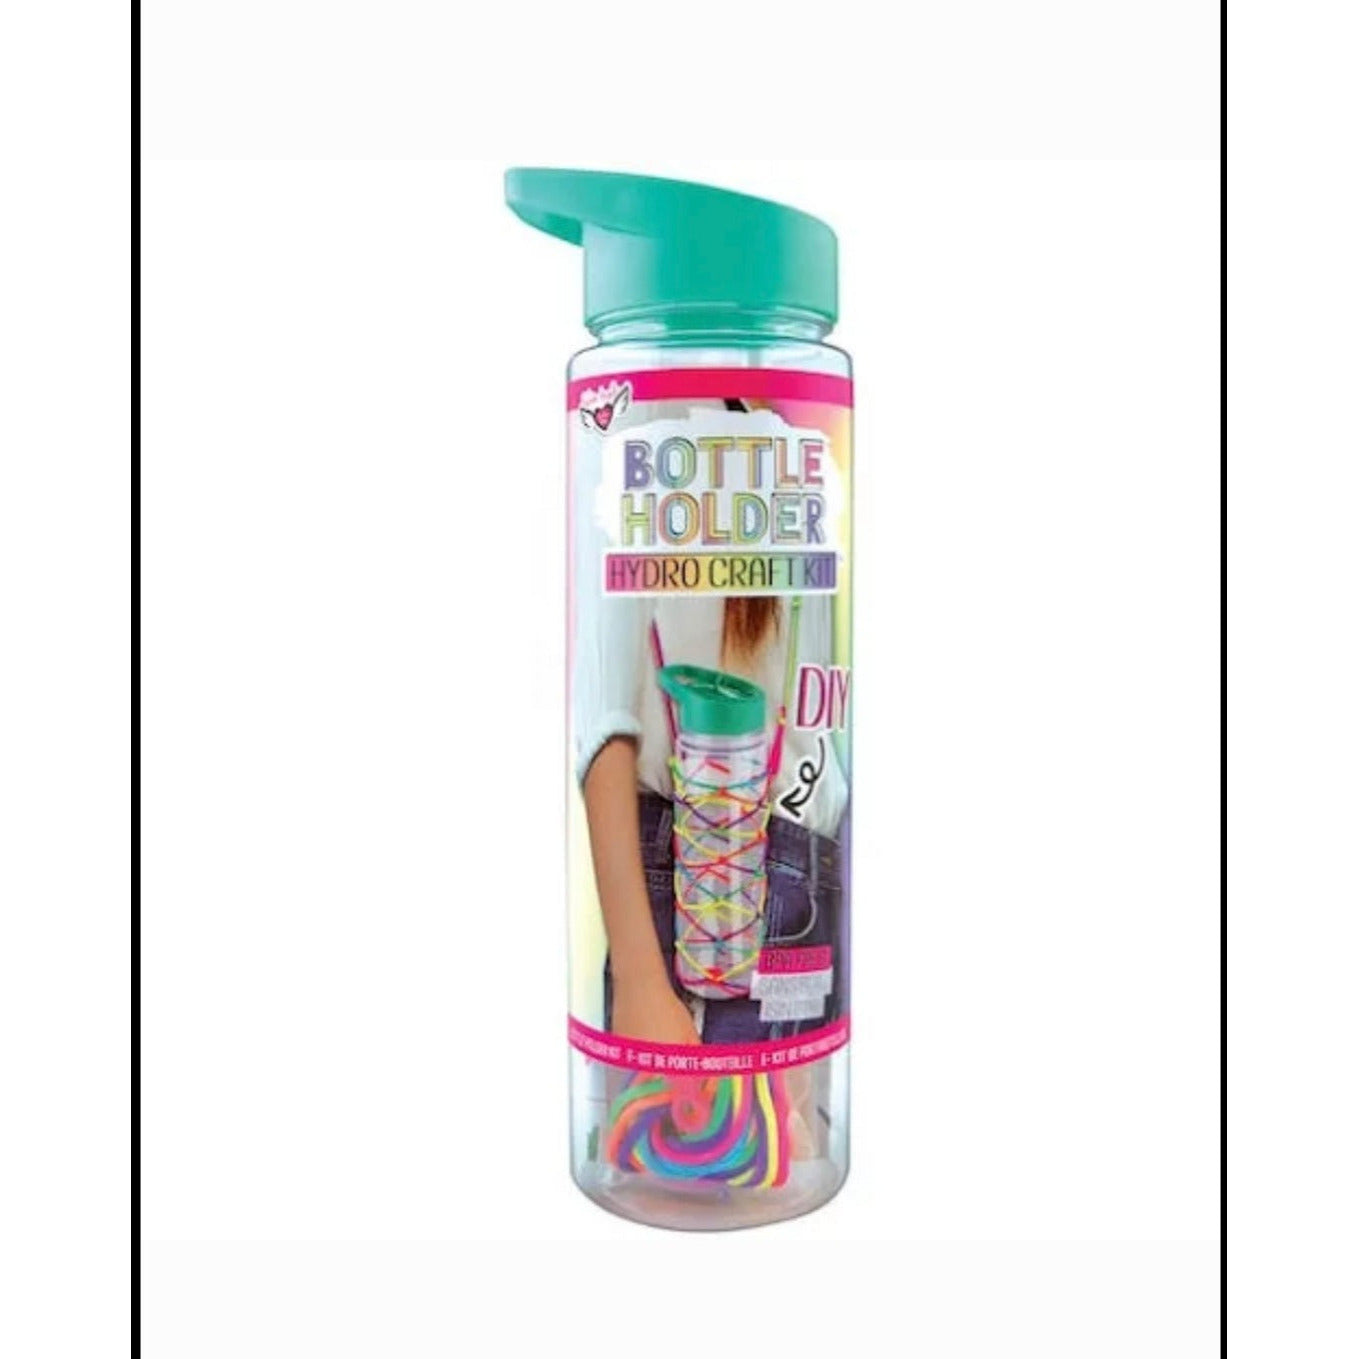 Water Bottle Craft Kit